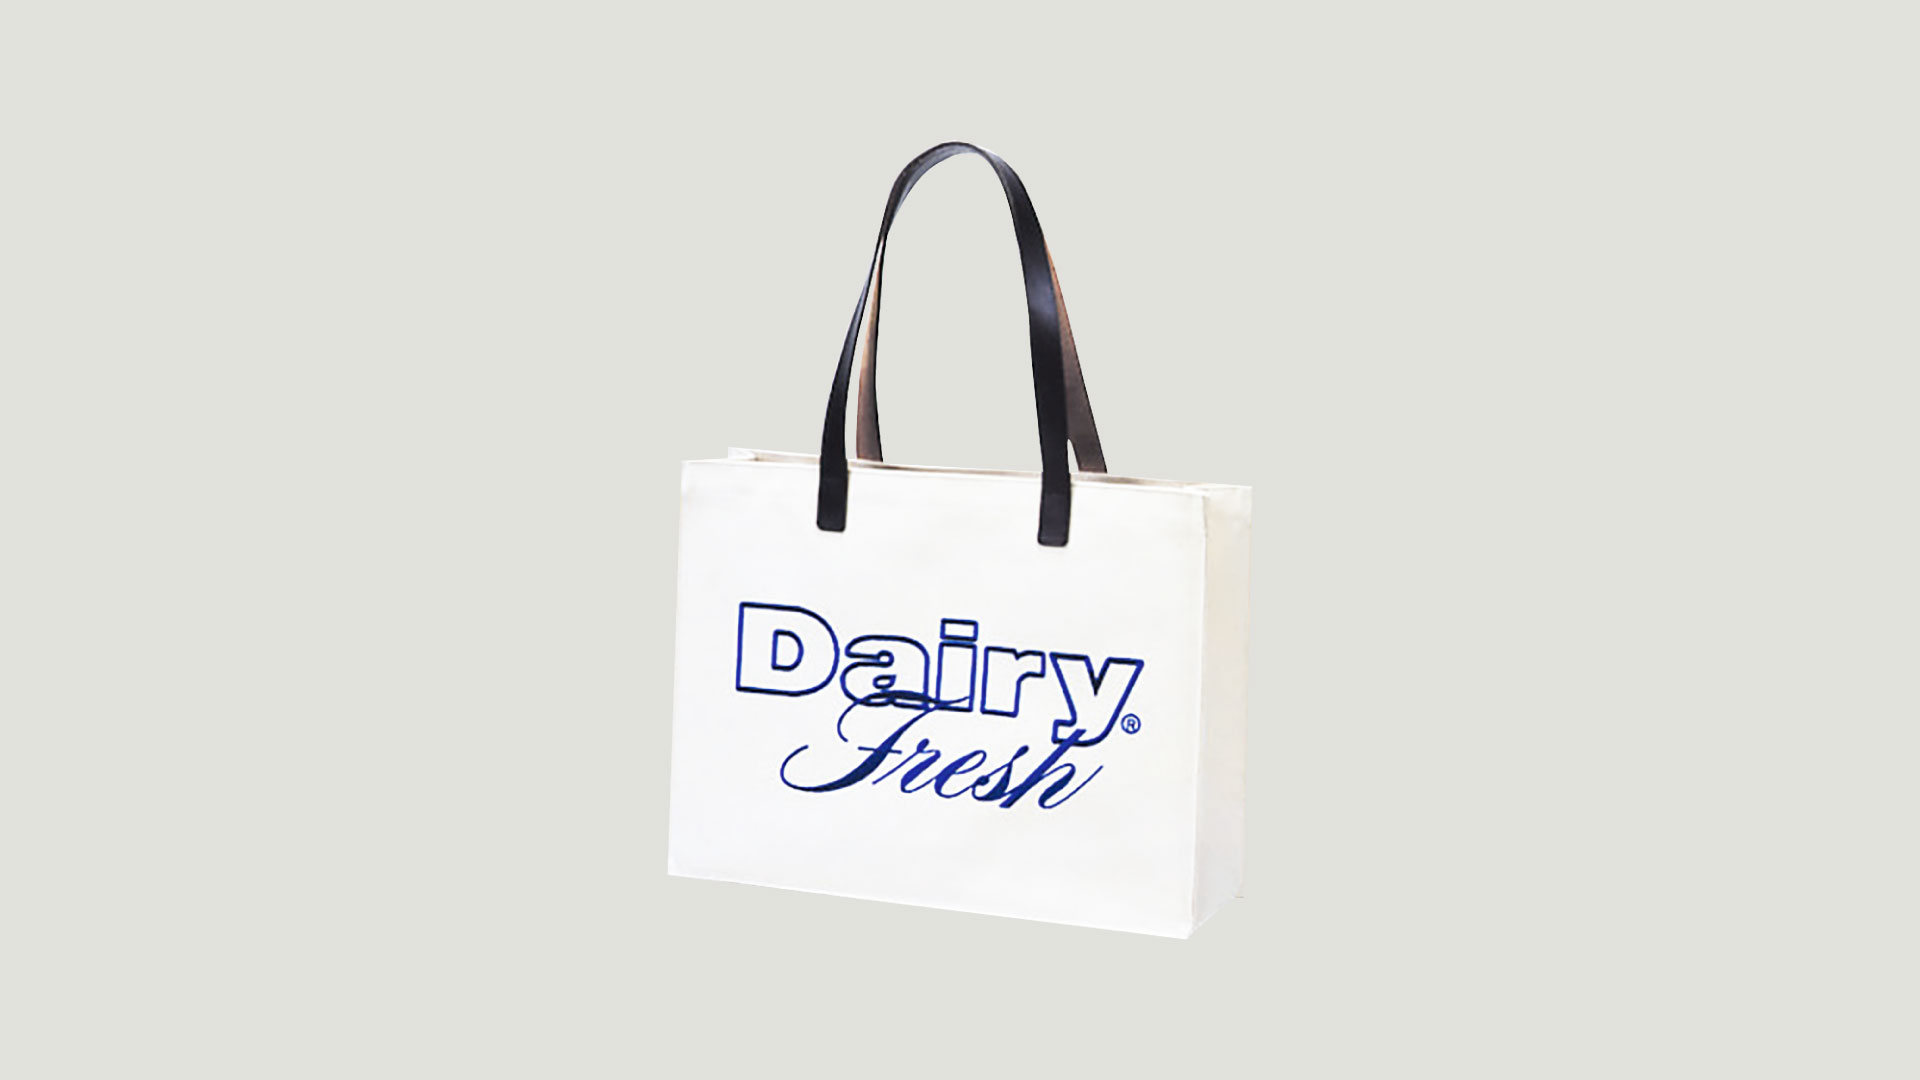 Dairy Fresh Goods